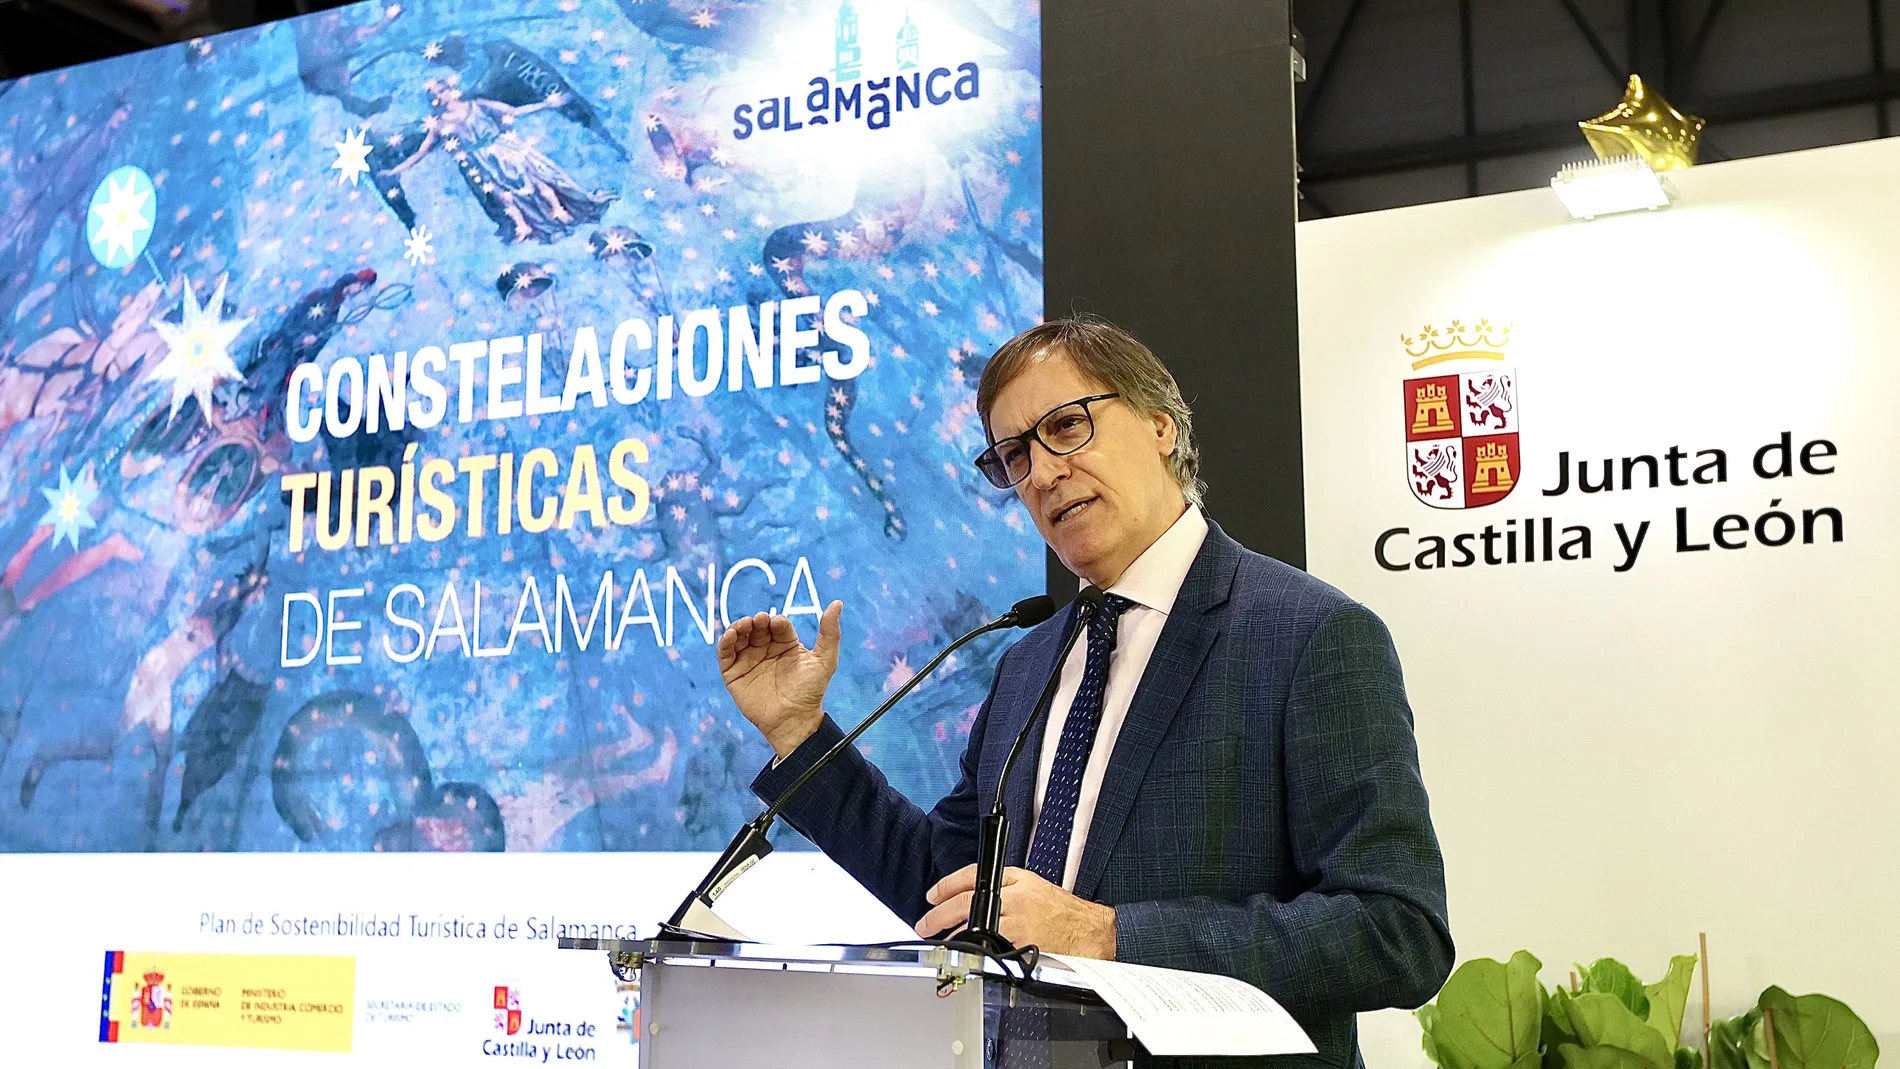 El alcalde de Salamanca, Carlos García Carbayo presenta la oferta turística de la ciudad en Fitur